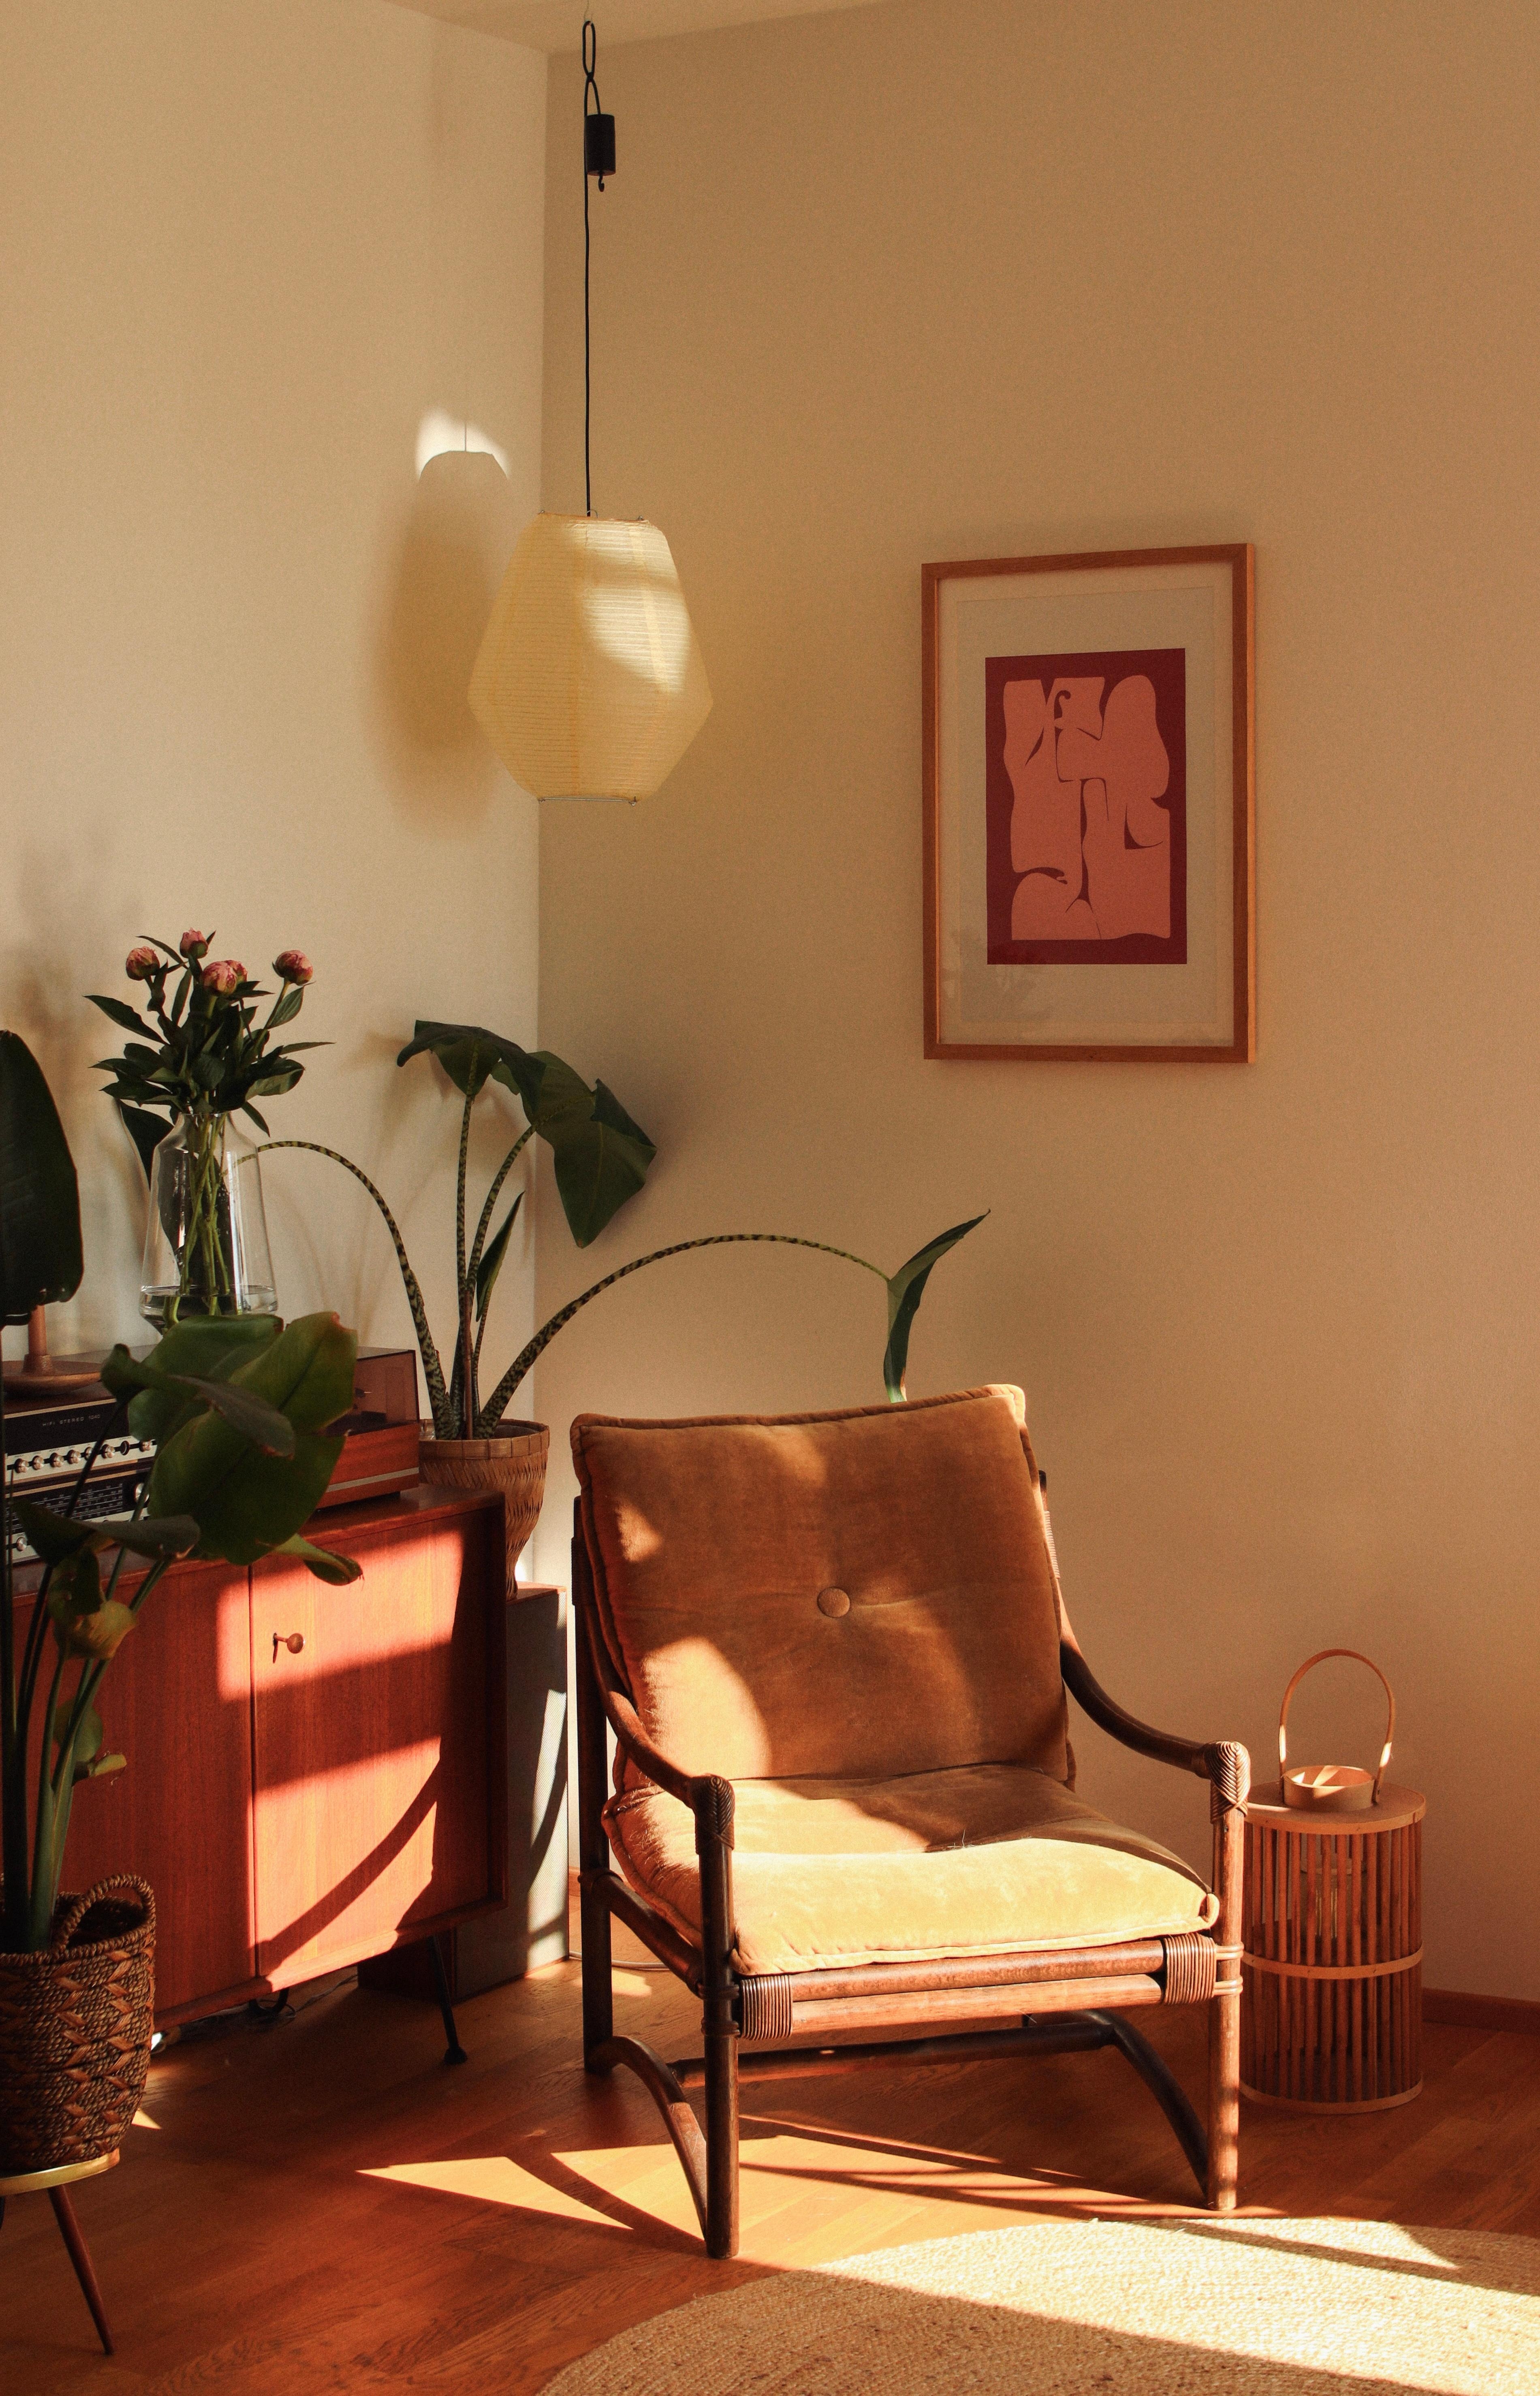 sunny corner 😺
#vintage#sunny#sideboard#teak